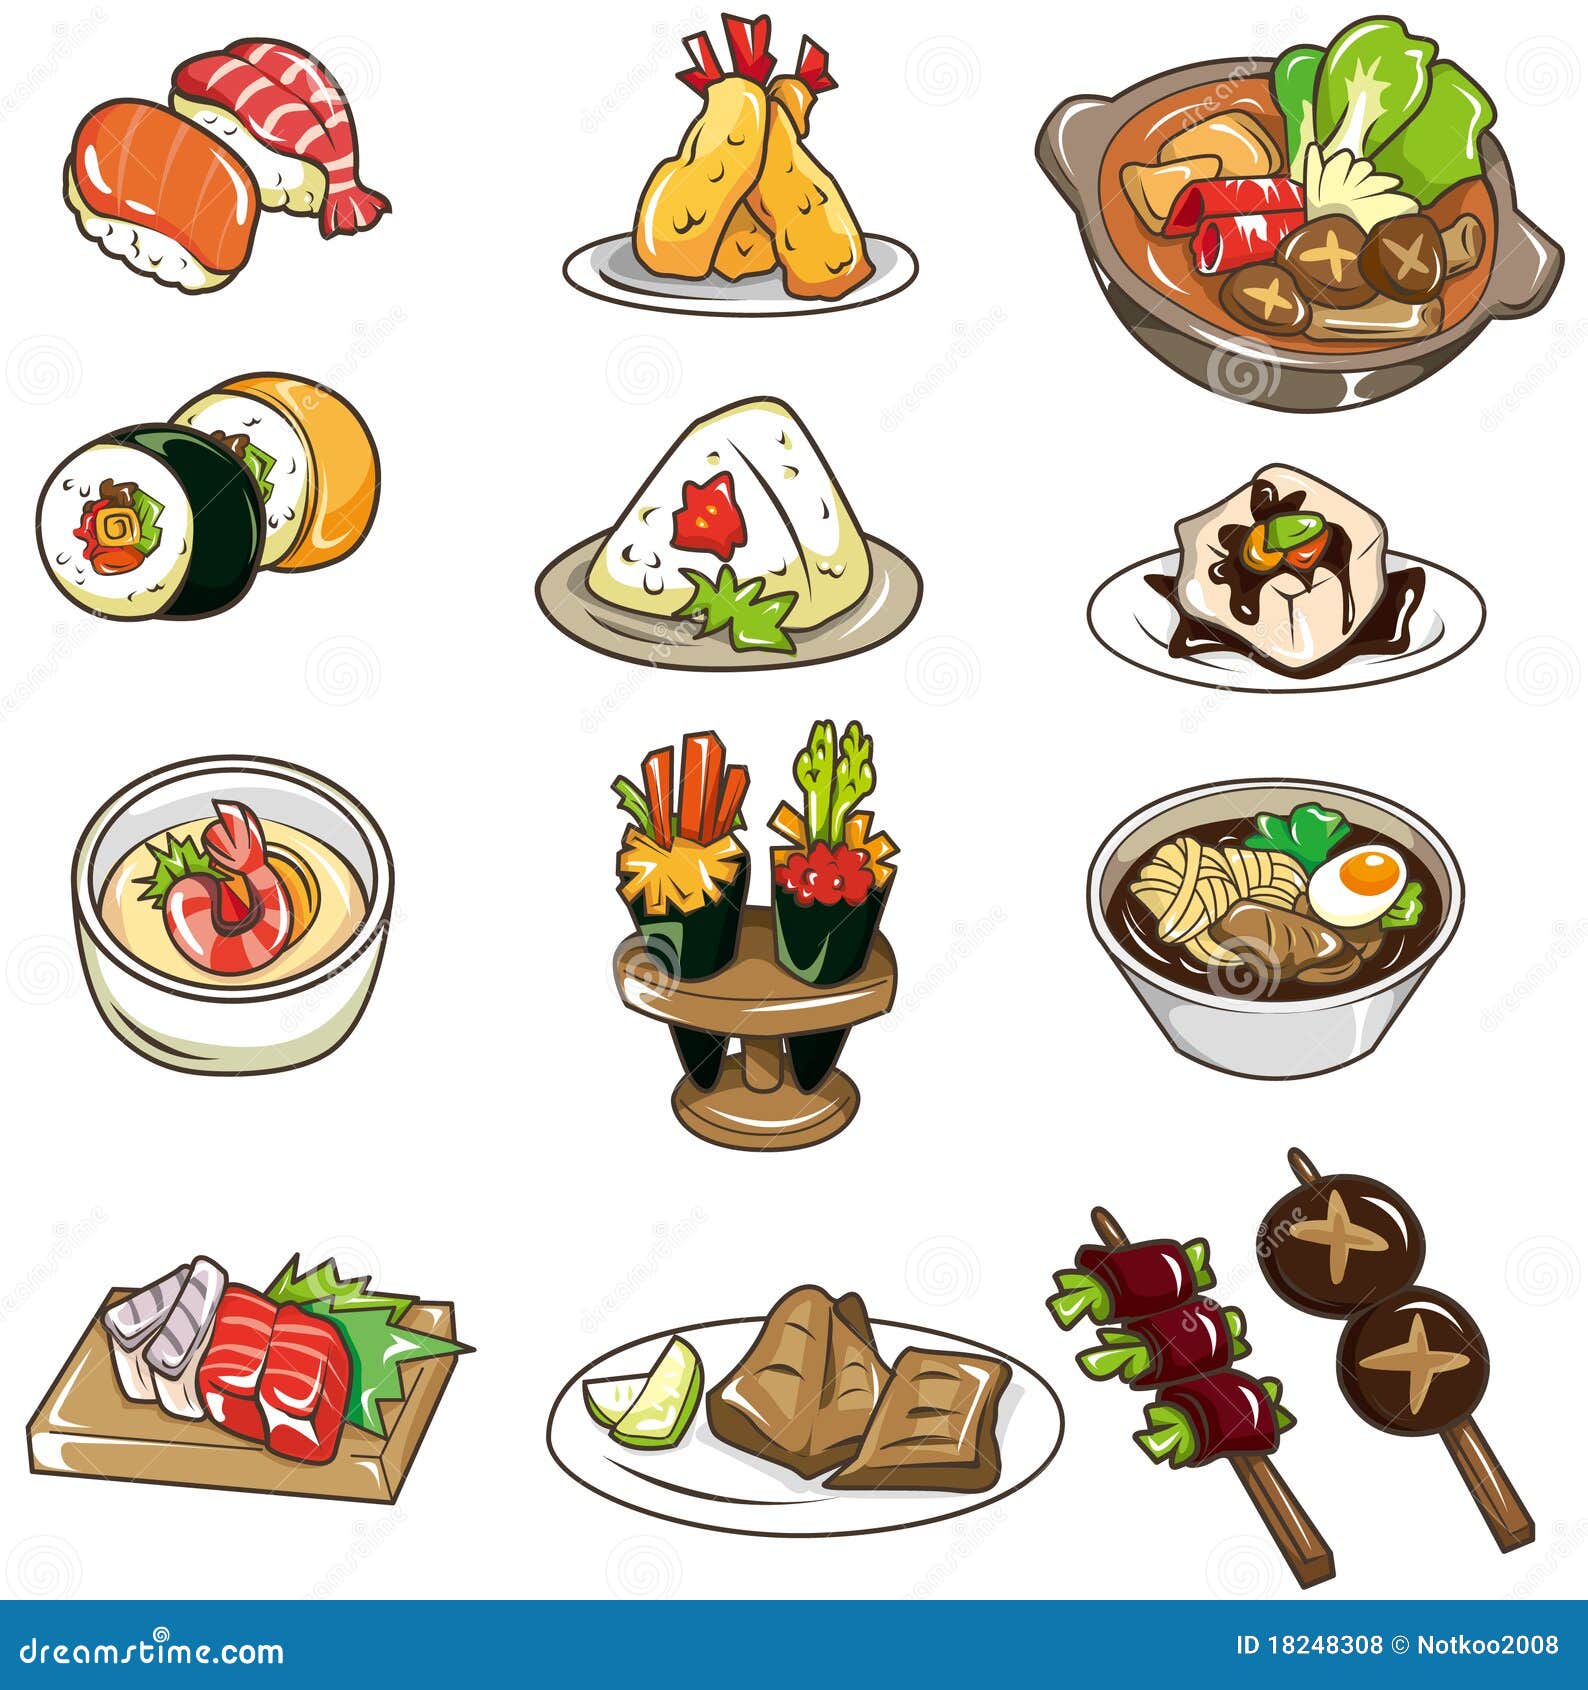 Вся еда а4. Стилизованная еда. Рисунки разных блюд. Нарисованная еда. Мультяшная еда.